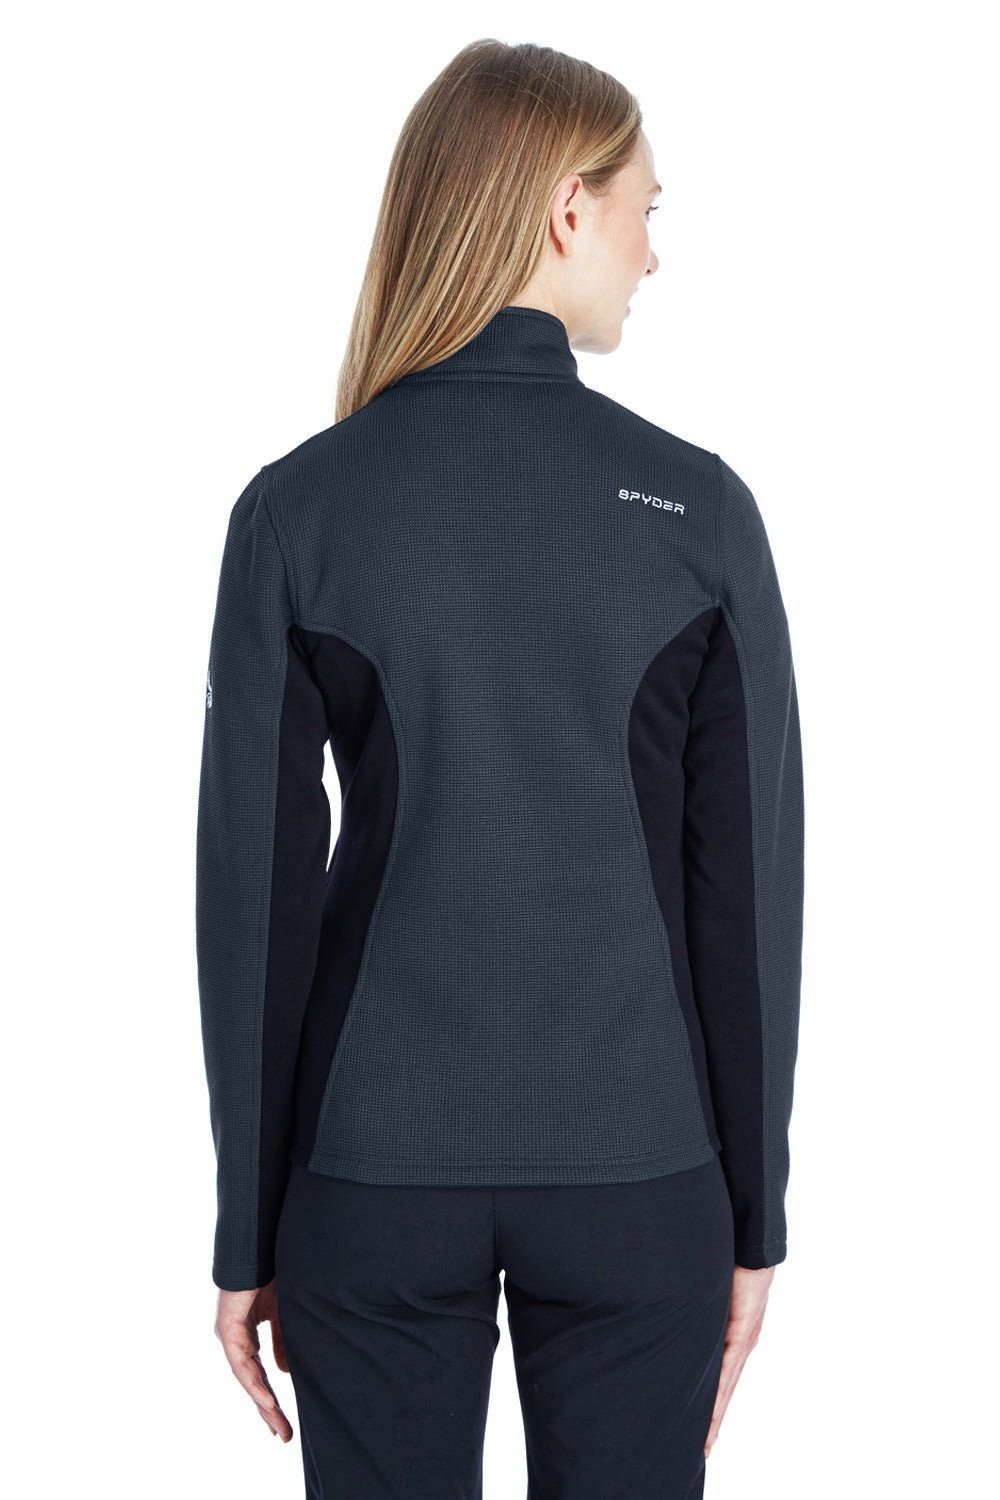 Spyder 187335 Womens Constant Full Zip Sweater Fleece Jacket Frontier Blue Back